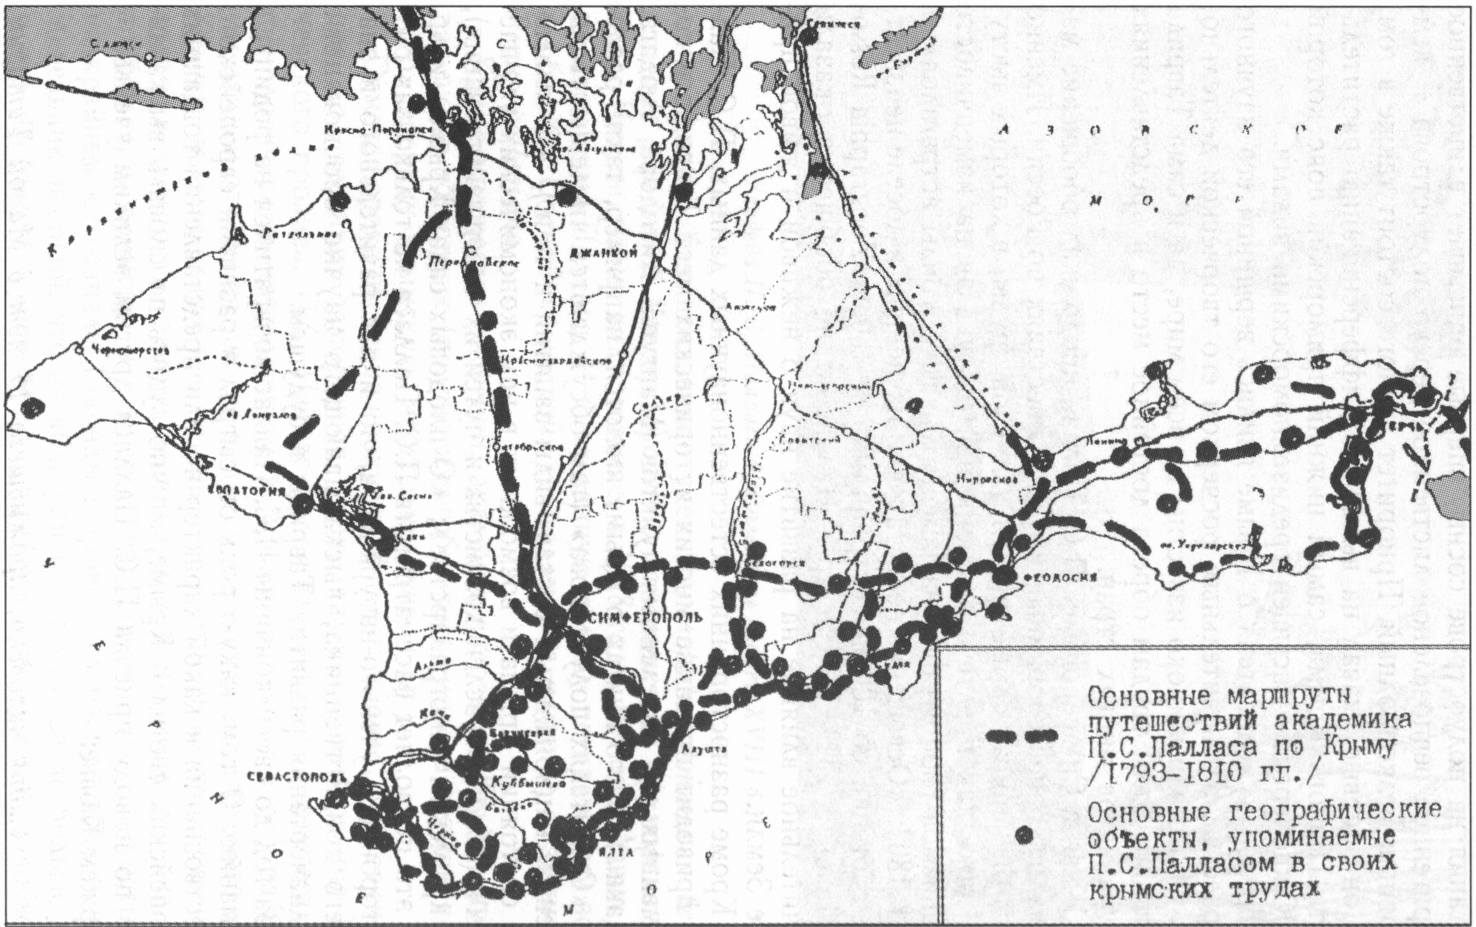 Карта маршрутов путешествий П.С. Палласа по Крыму (по В.Г. Ене, Ал. В. Ене, Ан. В. Ене, 2004 г.)